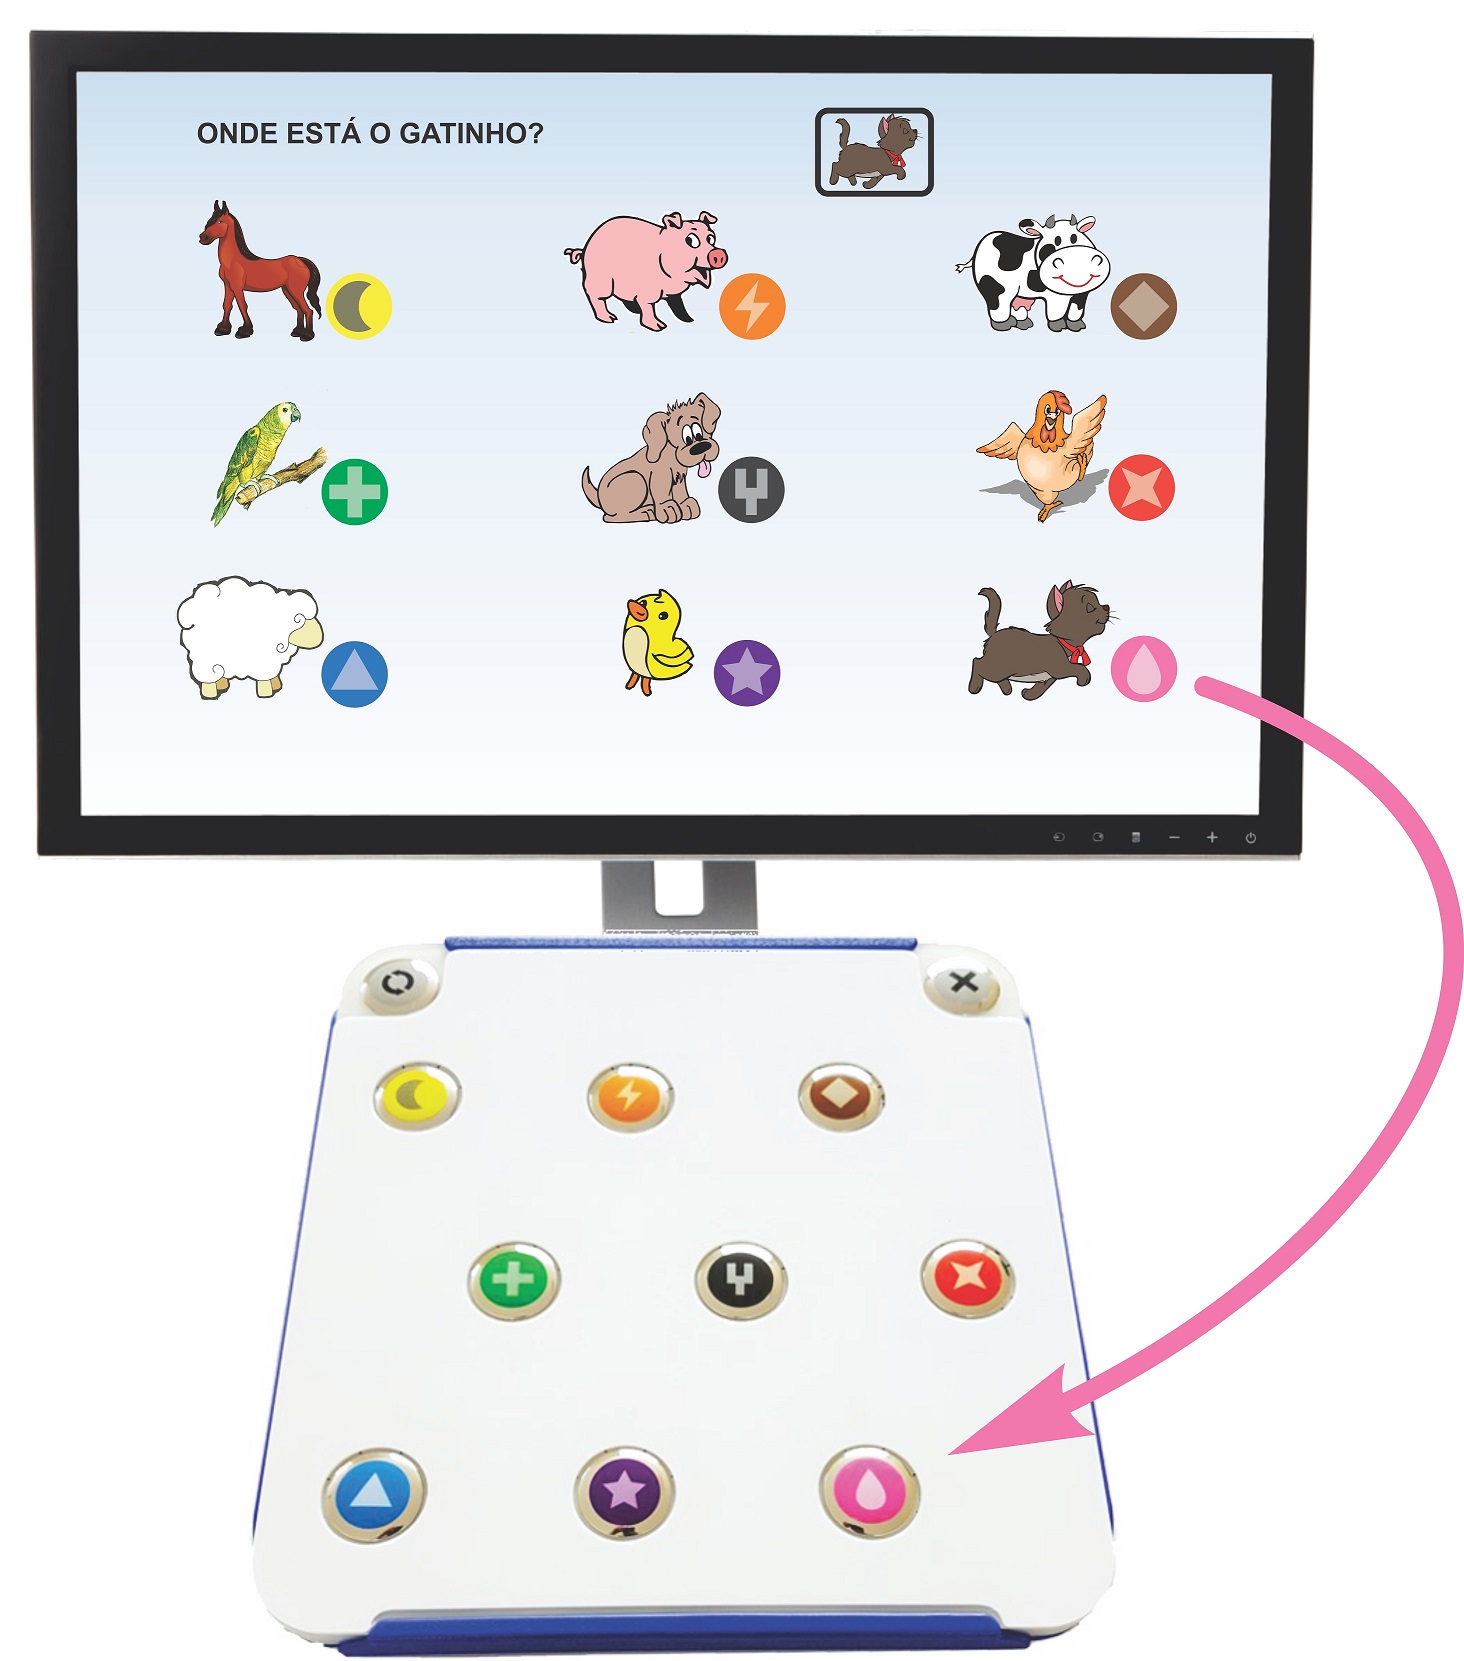 Monitor de computador e um teclado TiX. Há uma máscara branca sobre o painel do teclado TiX, que só deixa aparecer os botões iconográficos. O monitor está mostrando nove figuras de animais, cada uma delas associada a um dos ícones do TiX.